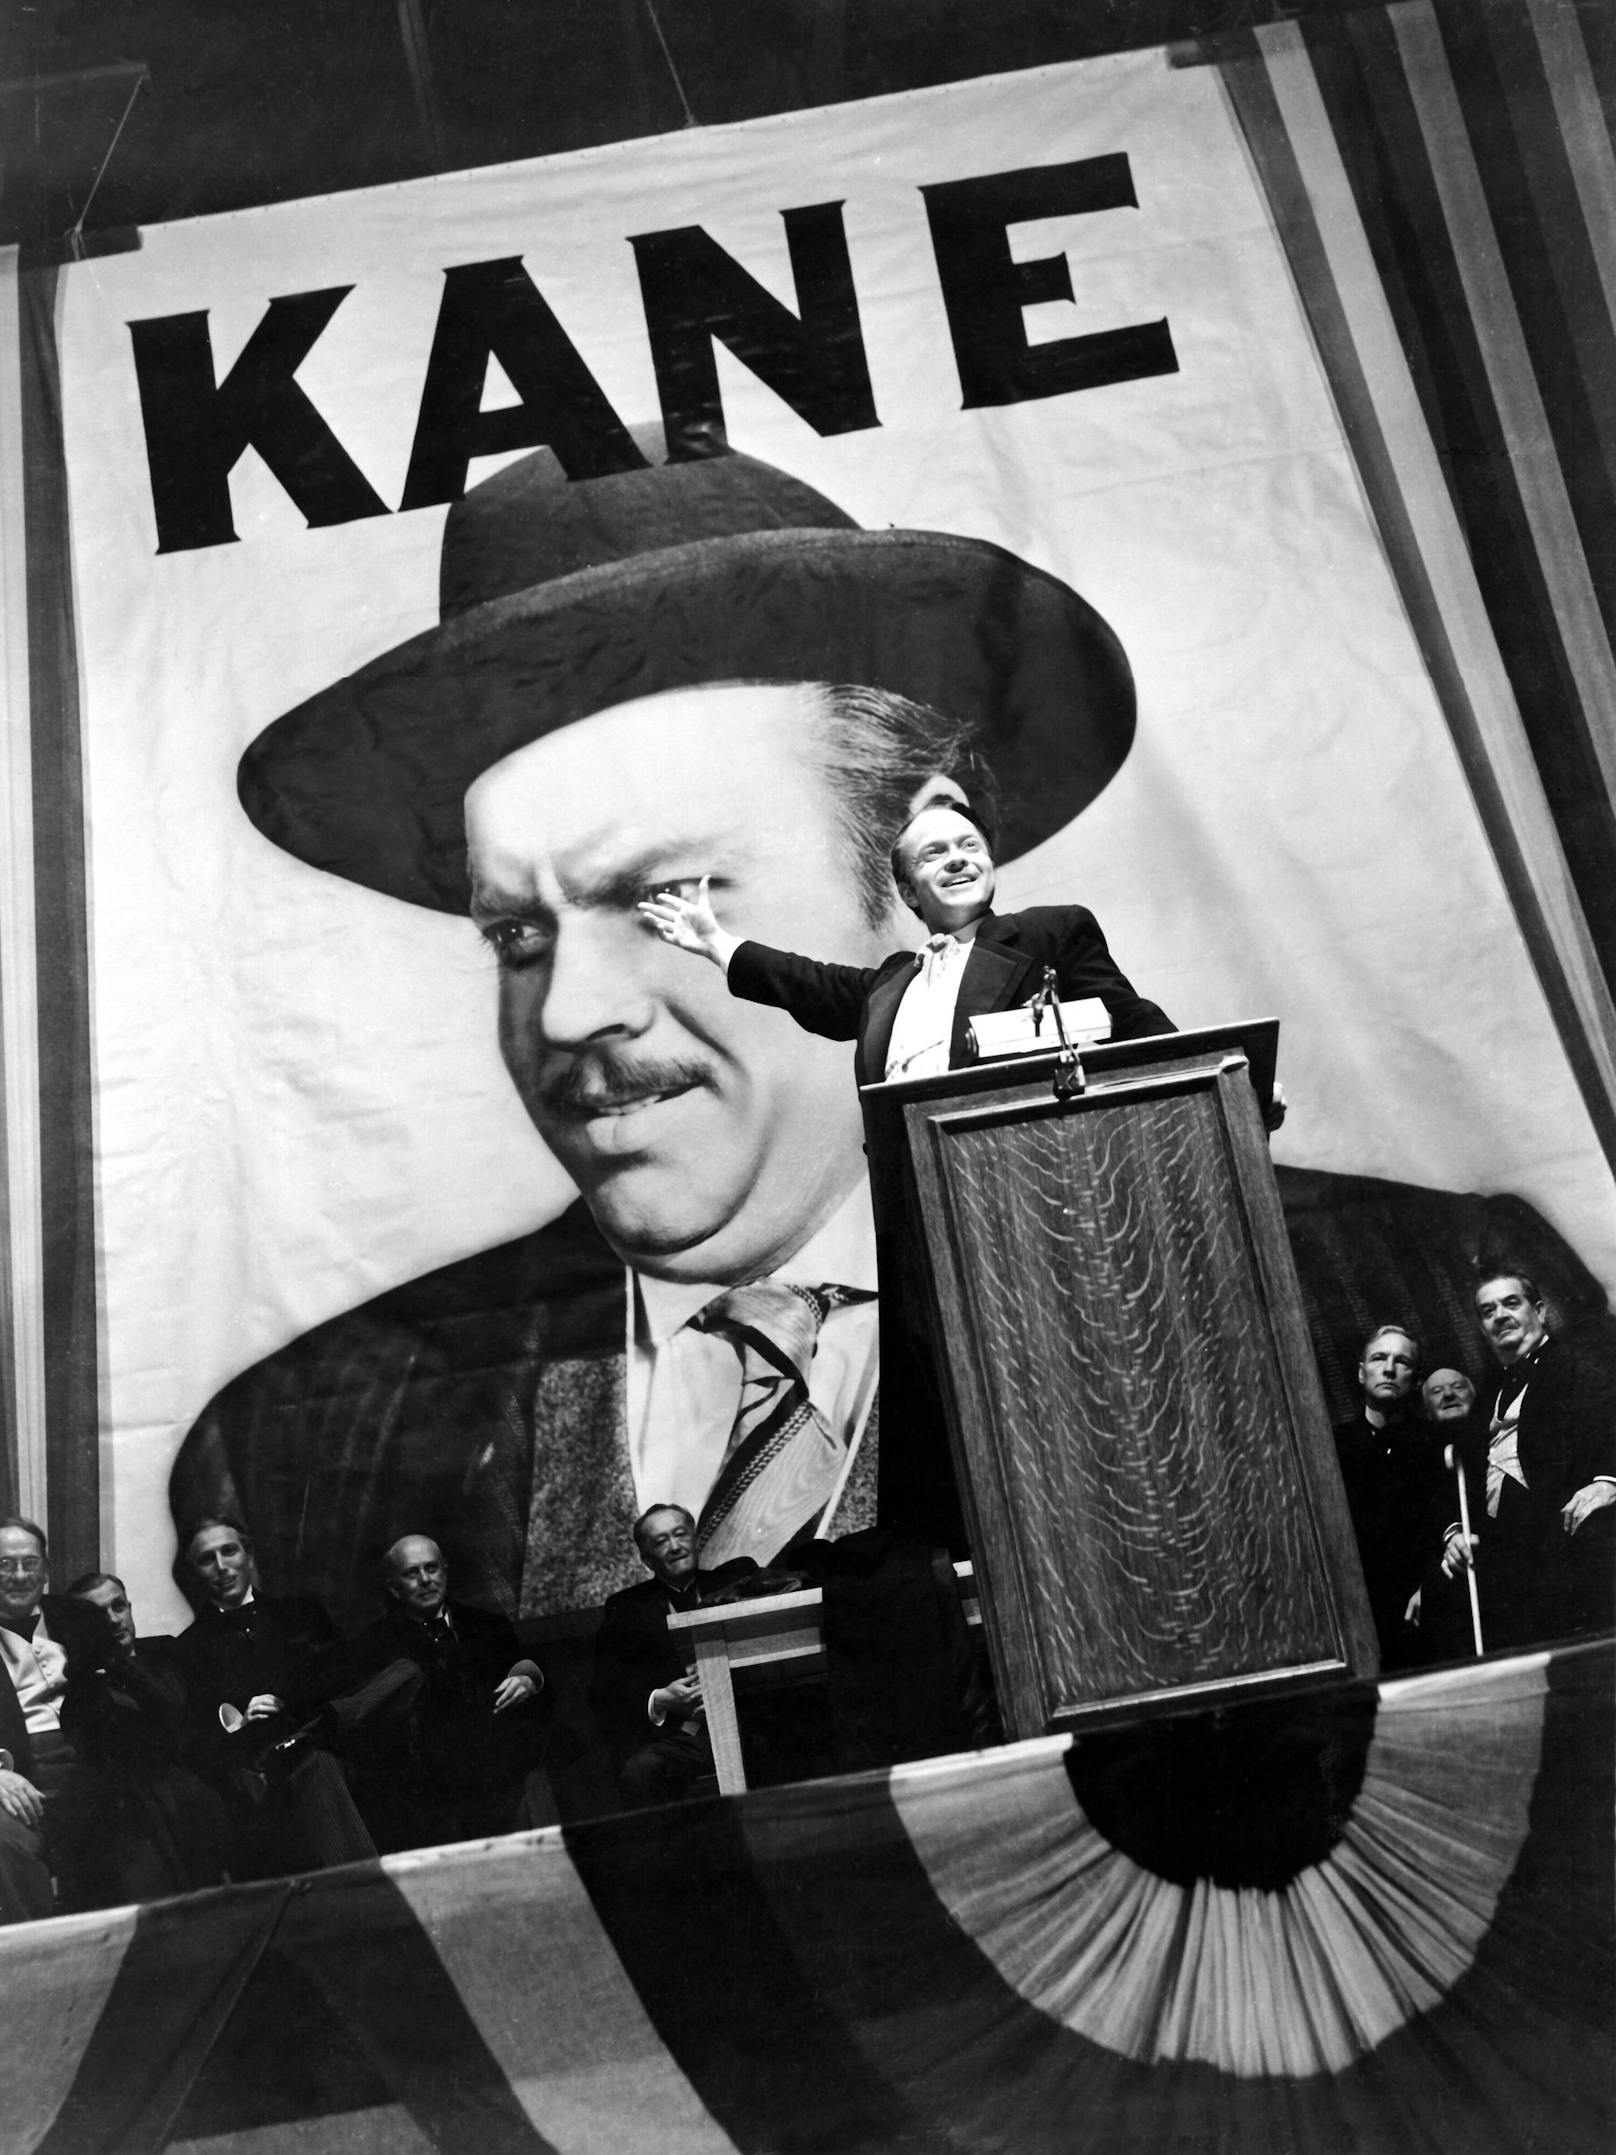 <strong>PLATZ 3: CITIZEN KANE</strong><br>(USA 1941, Regie: Orson Welles)<br><br>Die Top 3 eröffnet das Meisterwerk von Regie-Ass Orson Welles, der in seinem wohl berühmtesten Film auch selbst die Hauptrolle übernahm. "Citizen Kane" erzählt die Geschichte des Medienmoguls Kane (Orson Welles), der vor seinem Tod in Einsamkeit noch das rätselhafte Wort "Rosebud" äußert. Ein Journalist möchte hinter die Bedeutung des Wortes kommen und deckt dabei das faszinierende Leben des Millionärs auf.